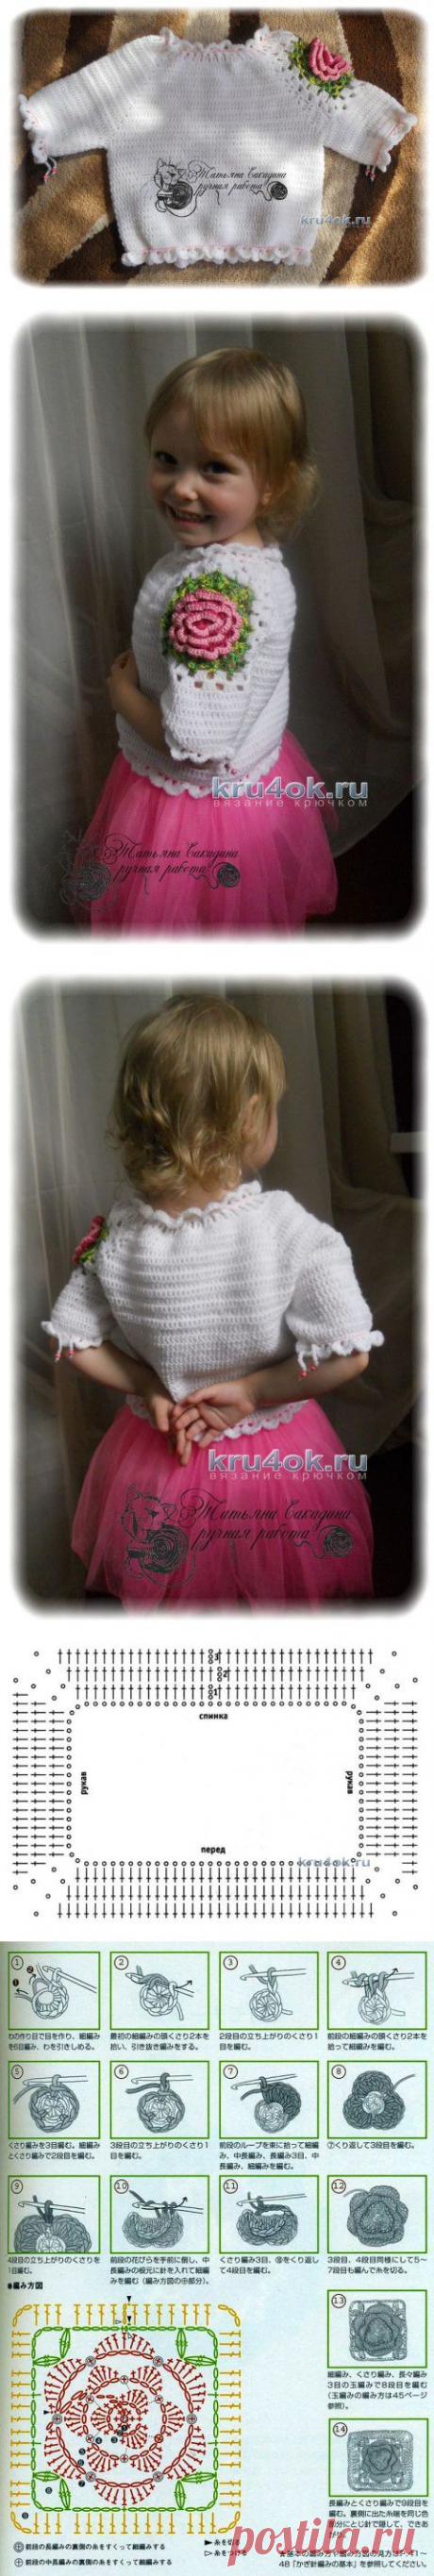 Детский пуловер с цветочным мотивом - вязание крючком на kru4ok.ru